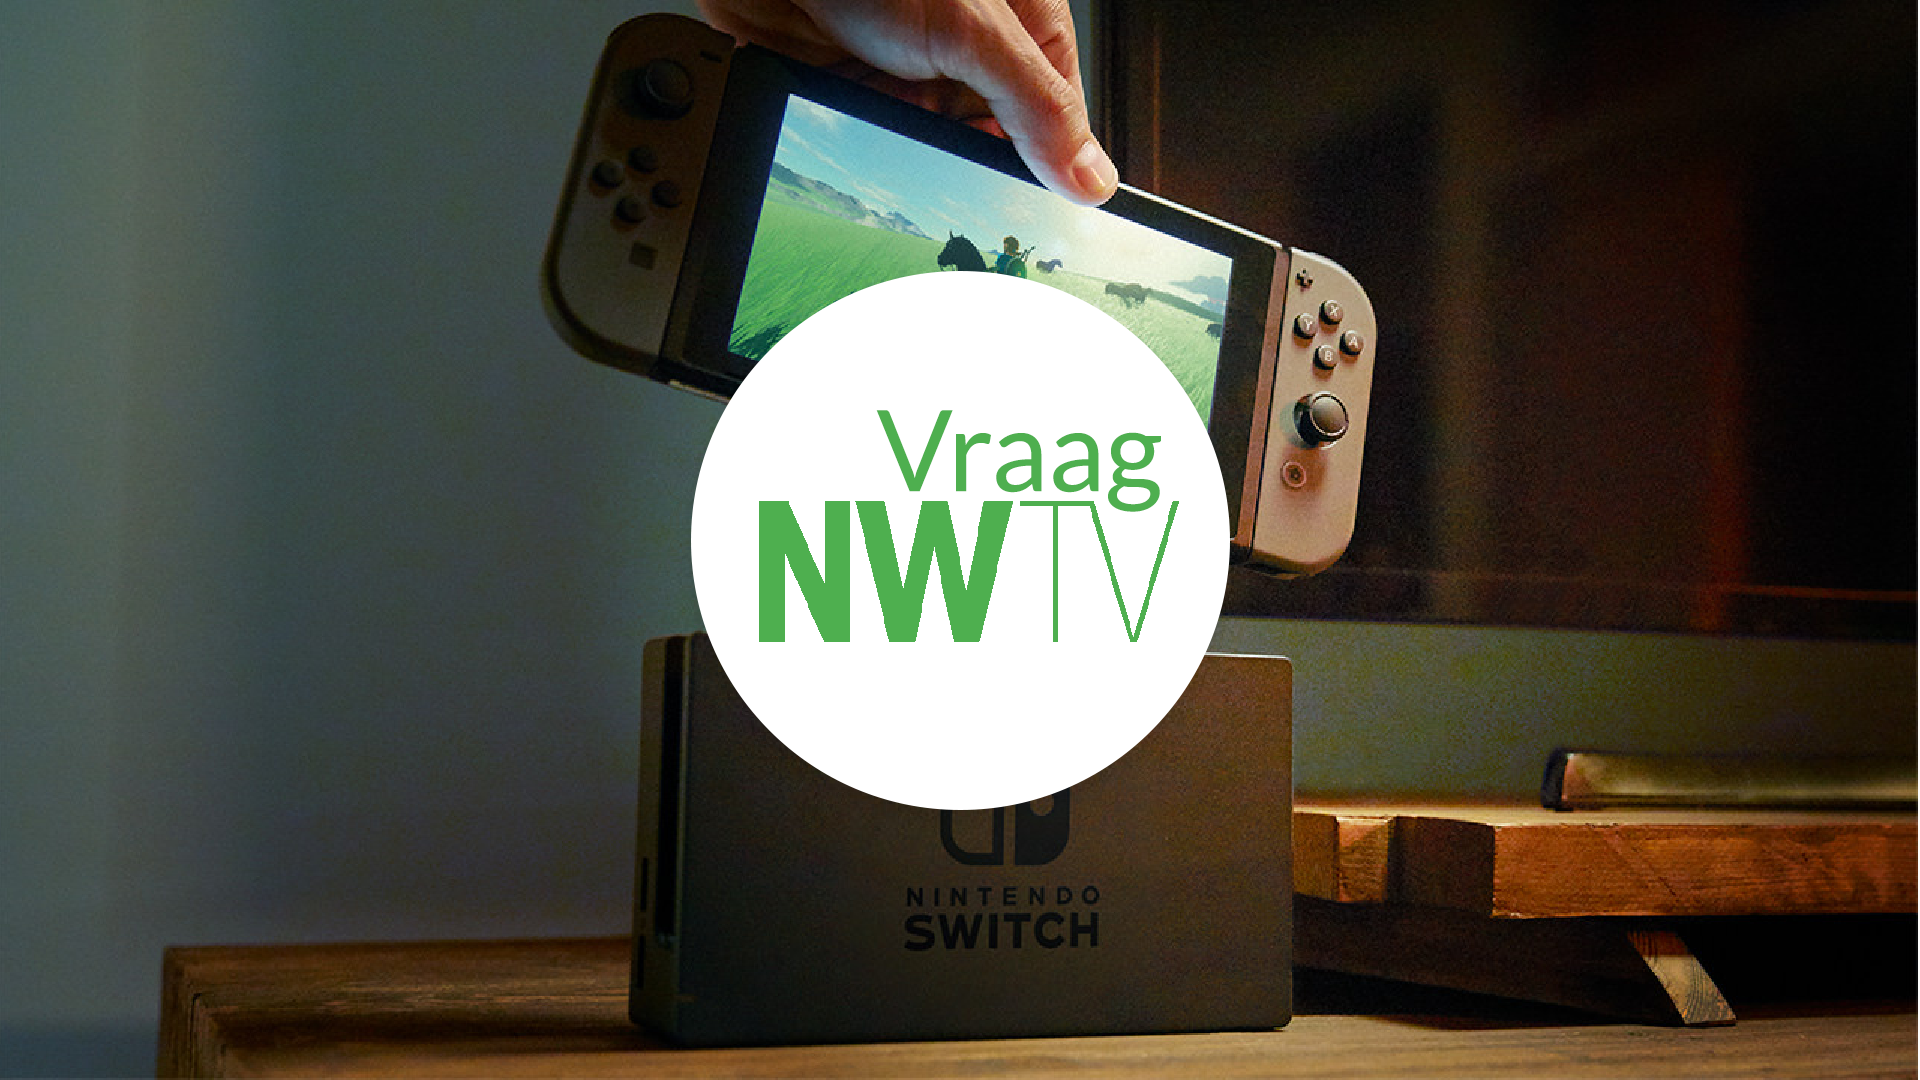 Vraag NWTV: Wat wil jij weten over de Nintendo Switch?